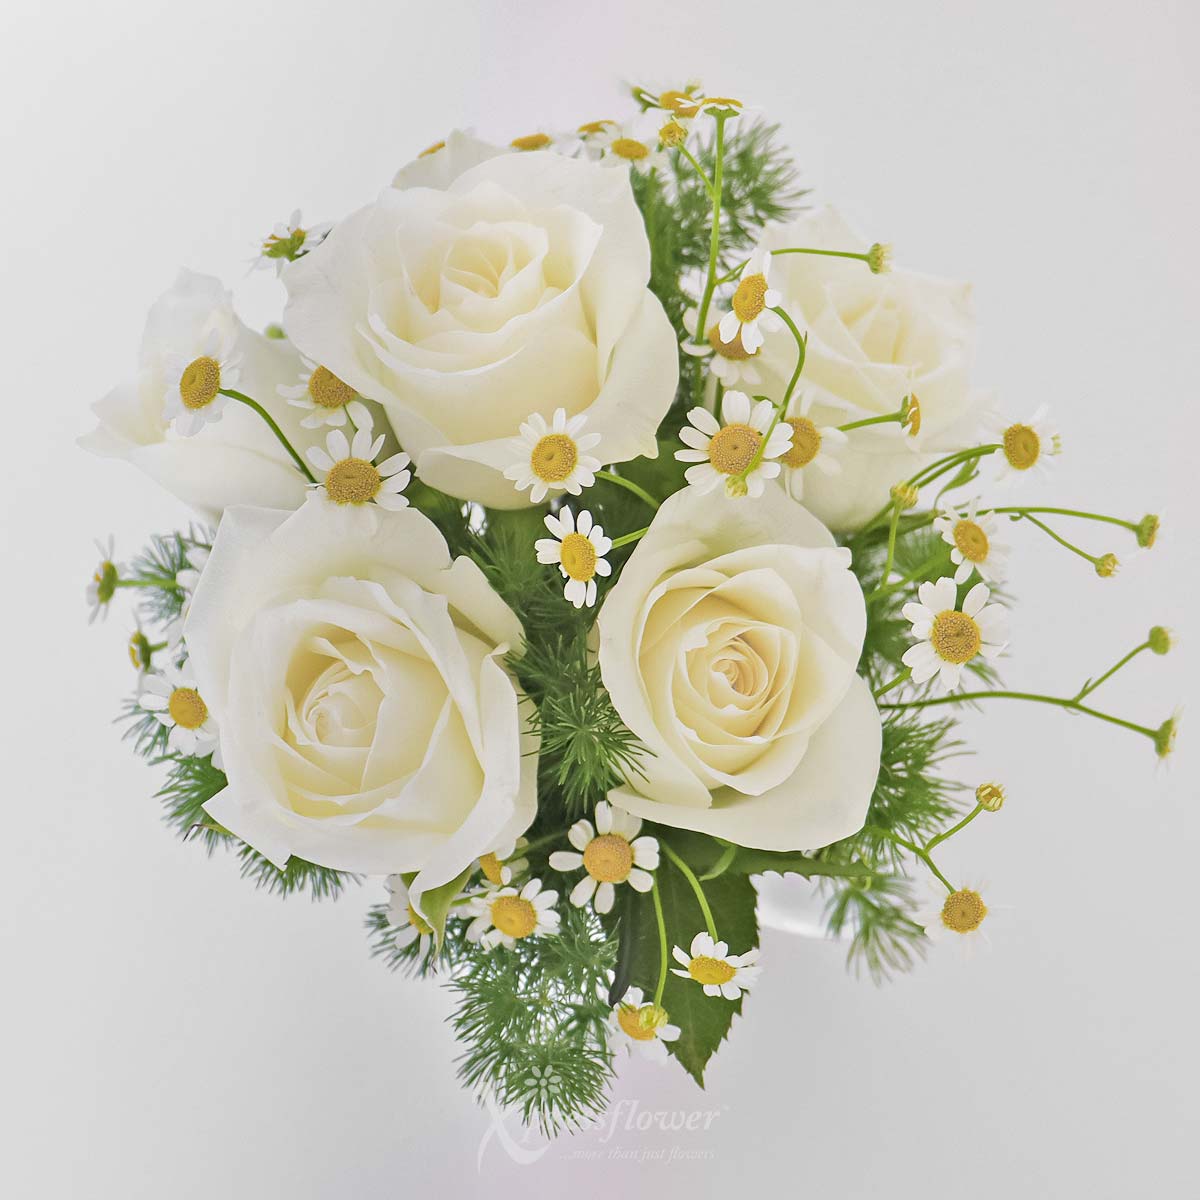 SNMG2310_Aquarius Blooms 6 White Roses with My Melody Personalised Mug Aquarius 1b